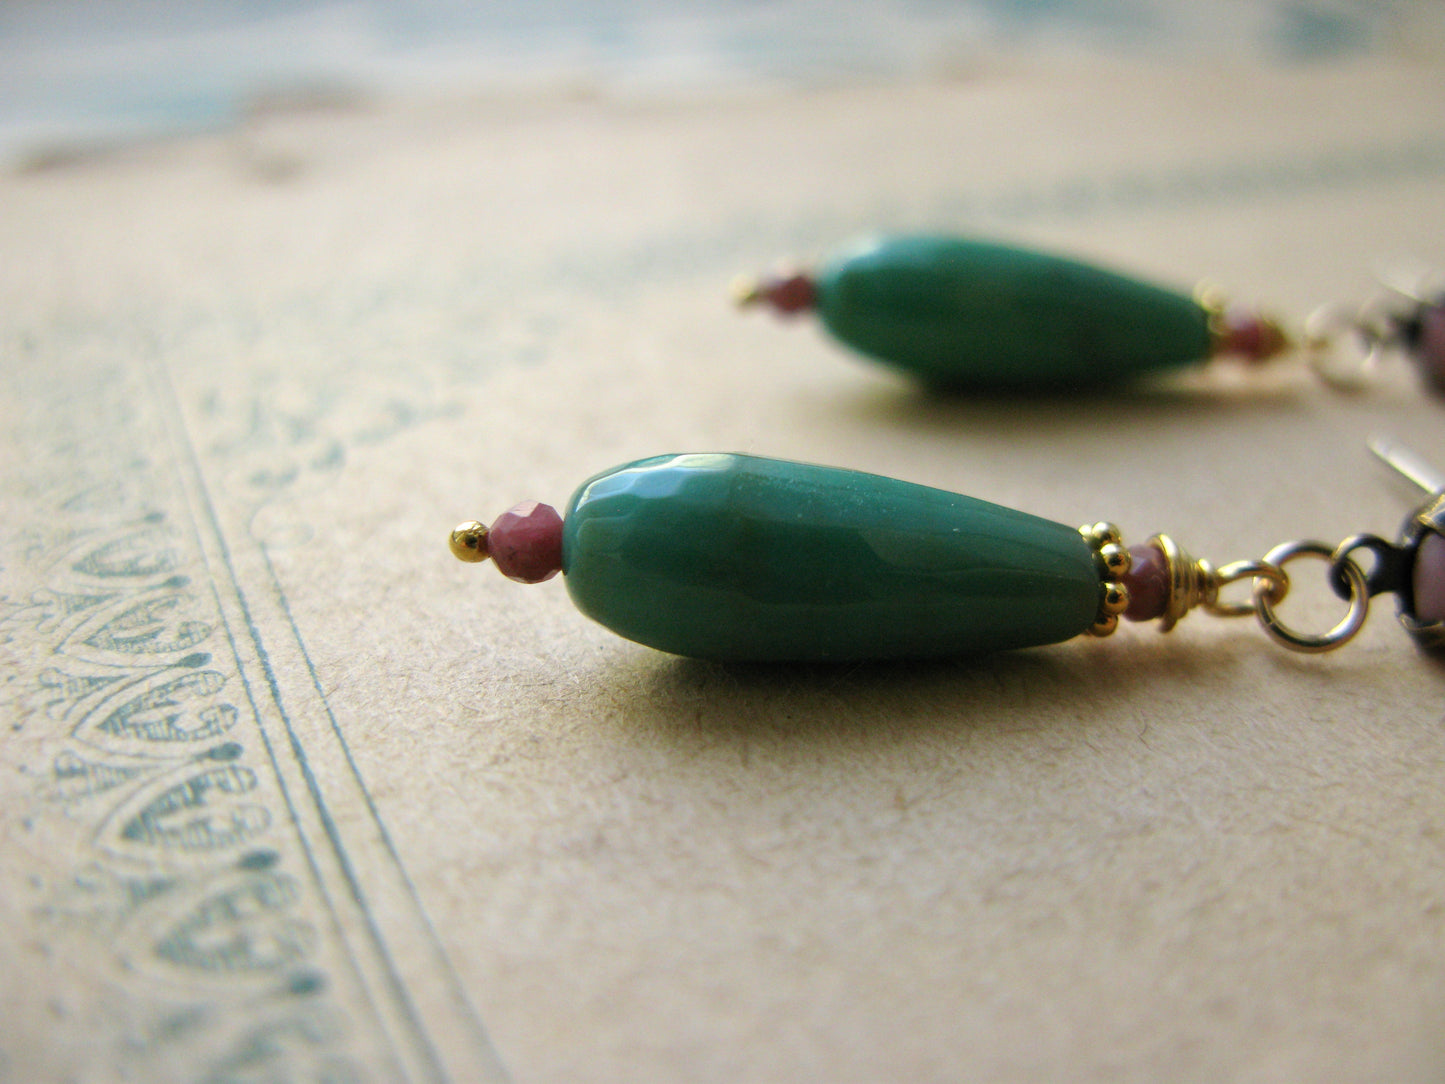 Magnolia post earrings in green